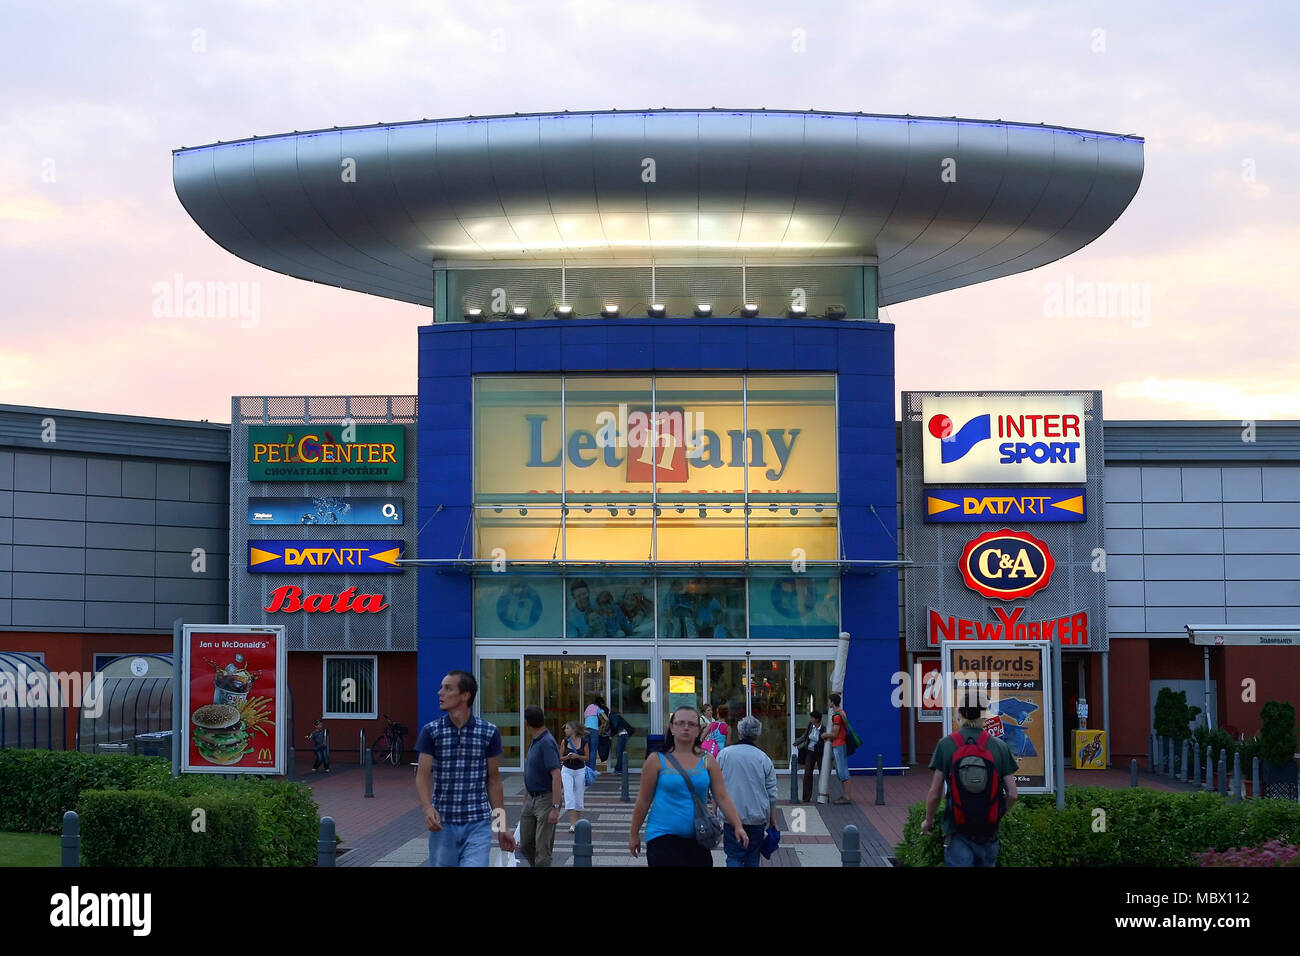 Letnany shopping mall Stock Photo - Alamy